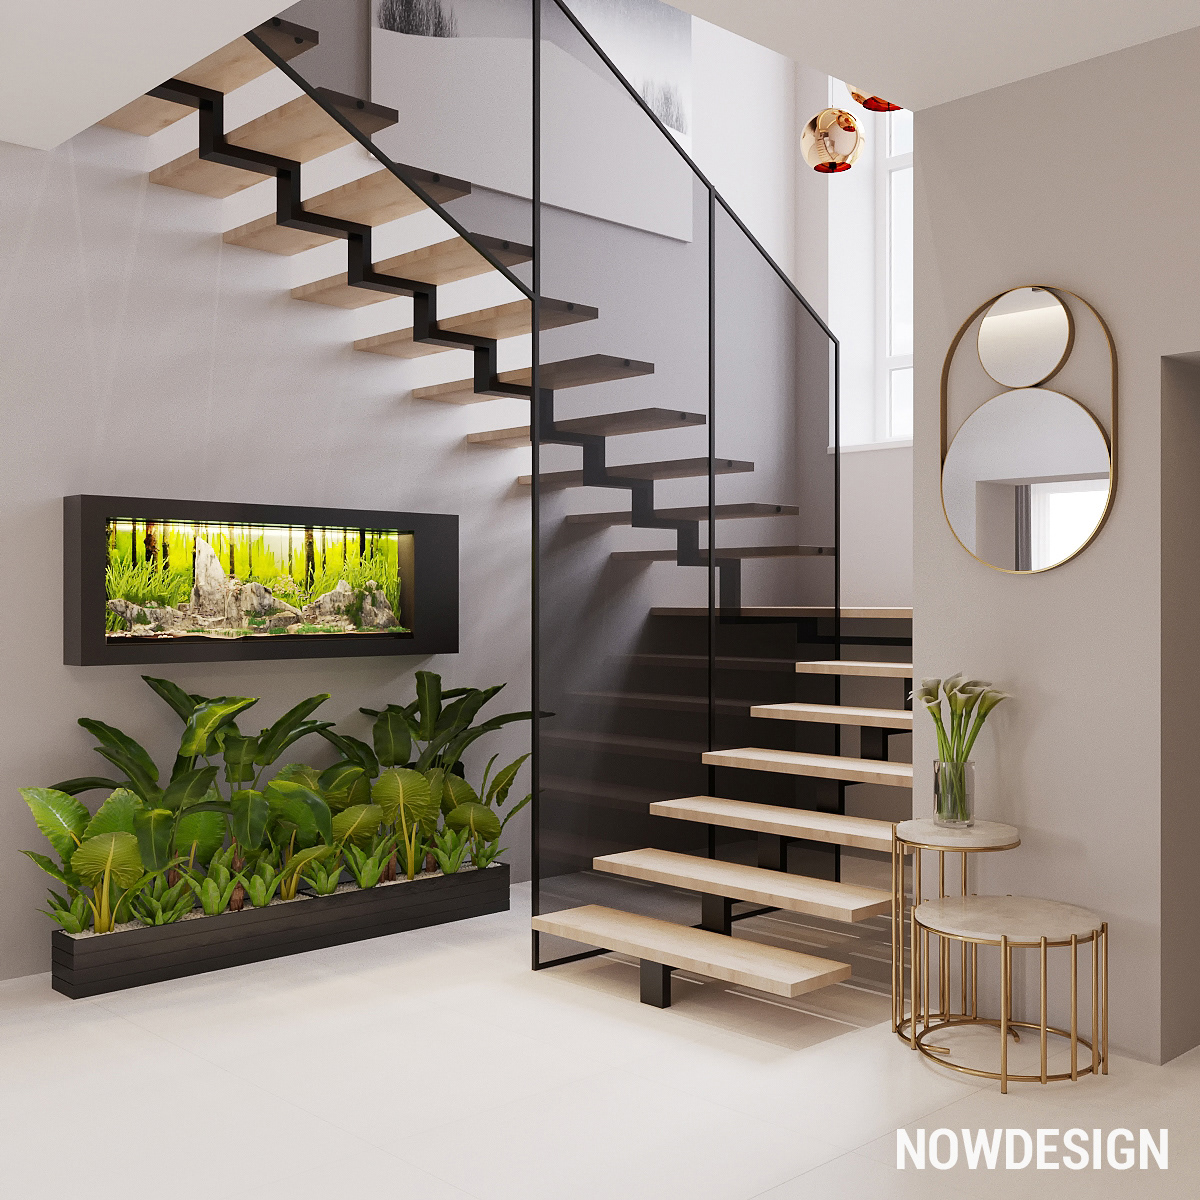 Interior minimal Minimalism nowdesign studio inerior design